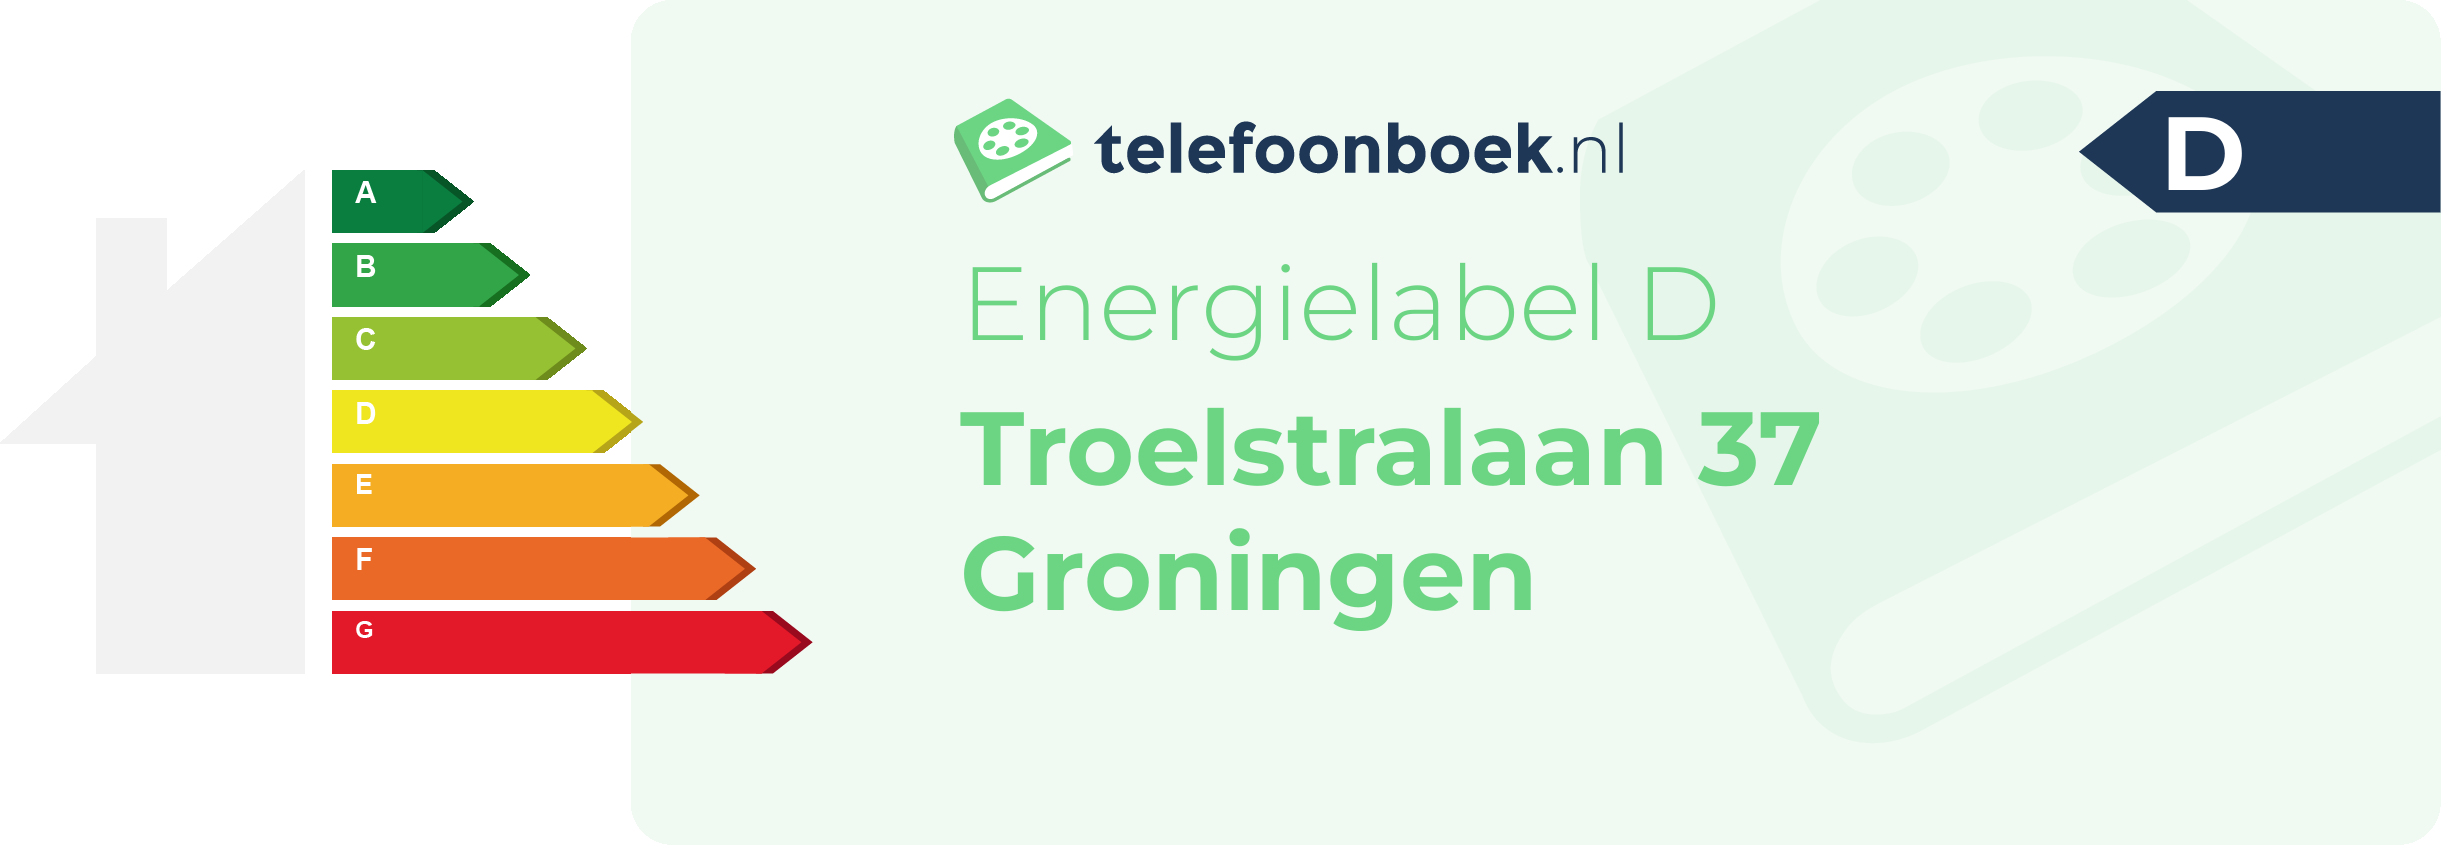 Energielabel Troelstralaan 37 Groningen